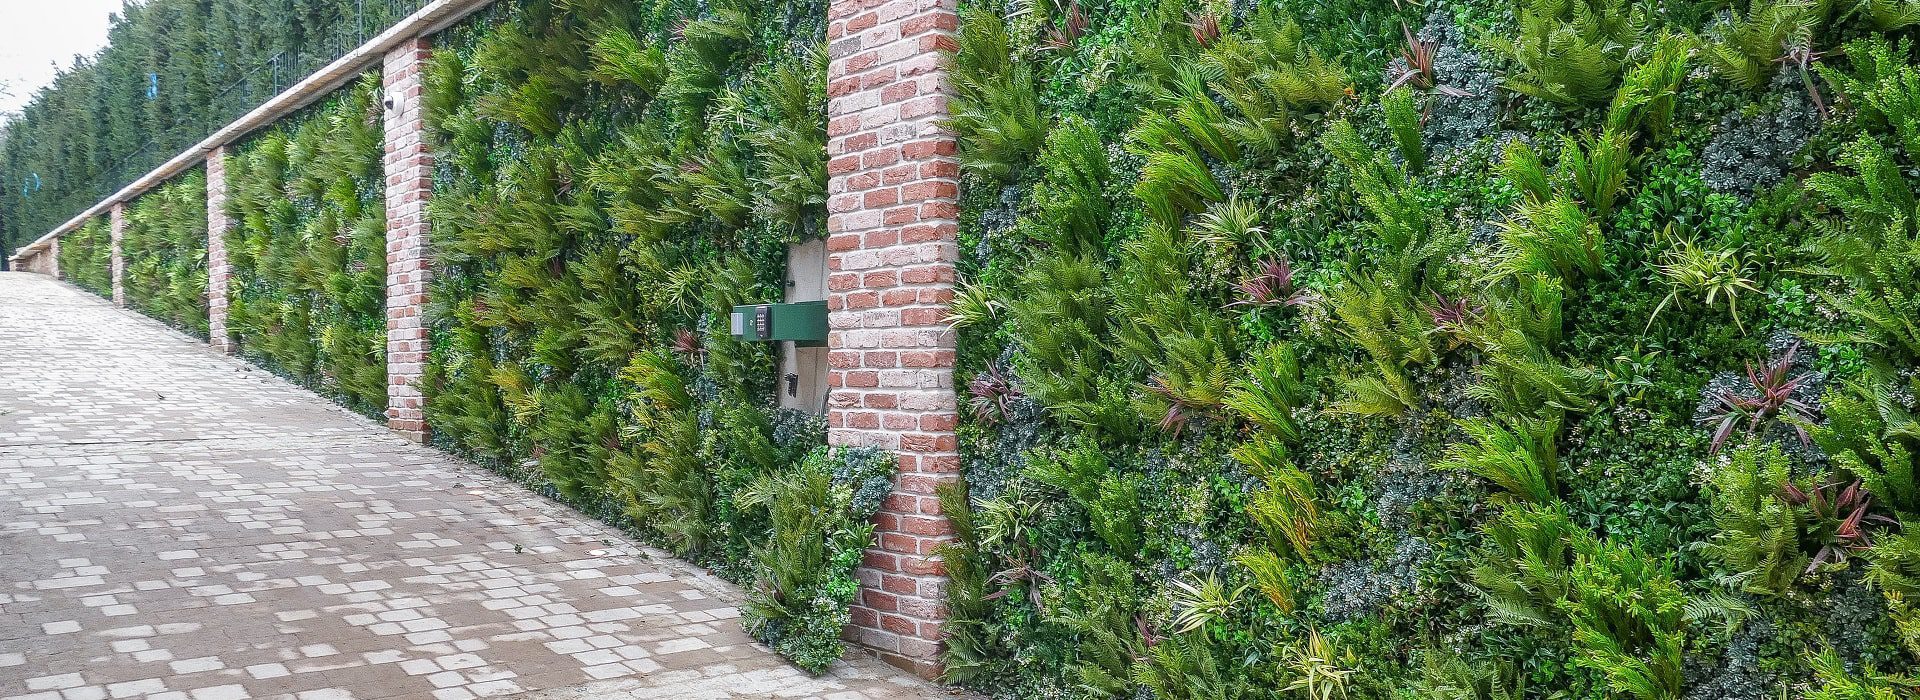 Natural-Looking Green Wall